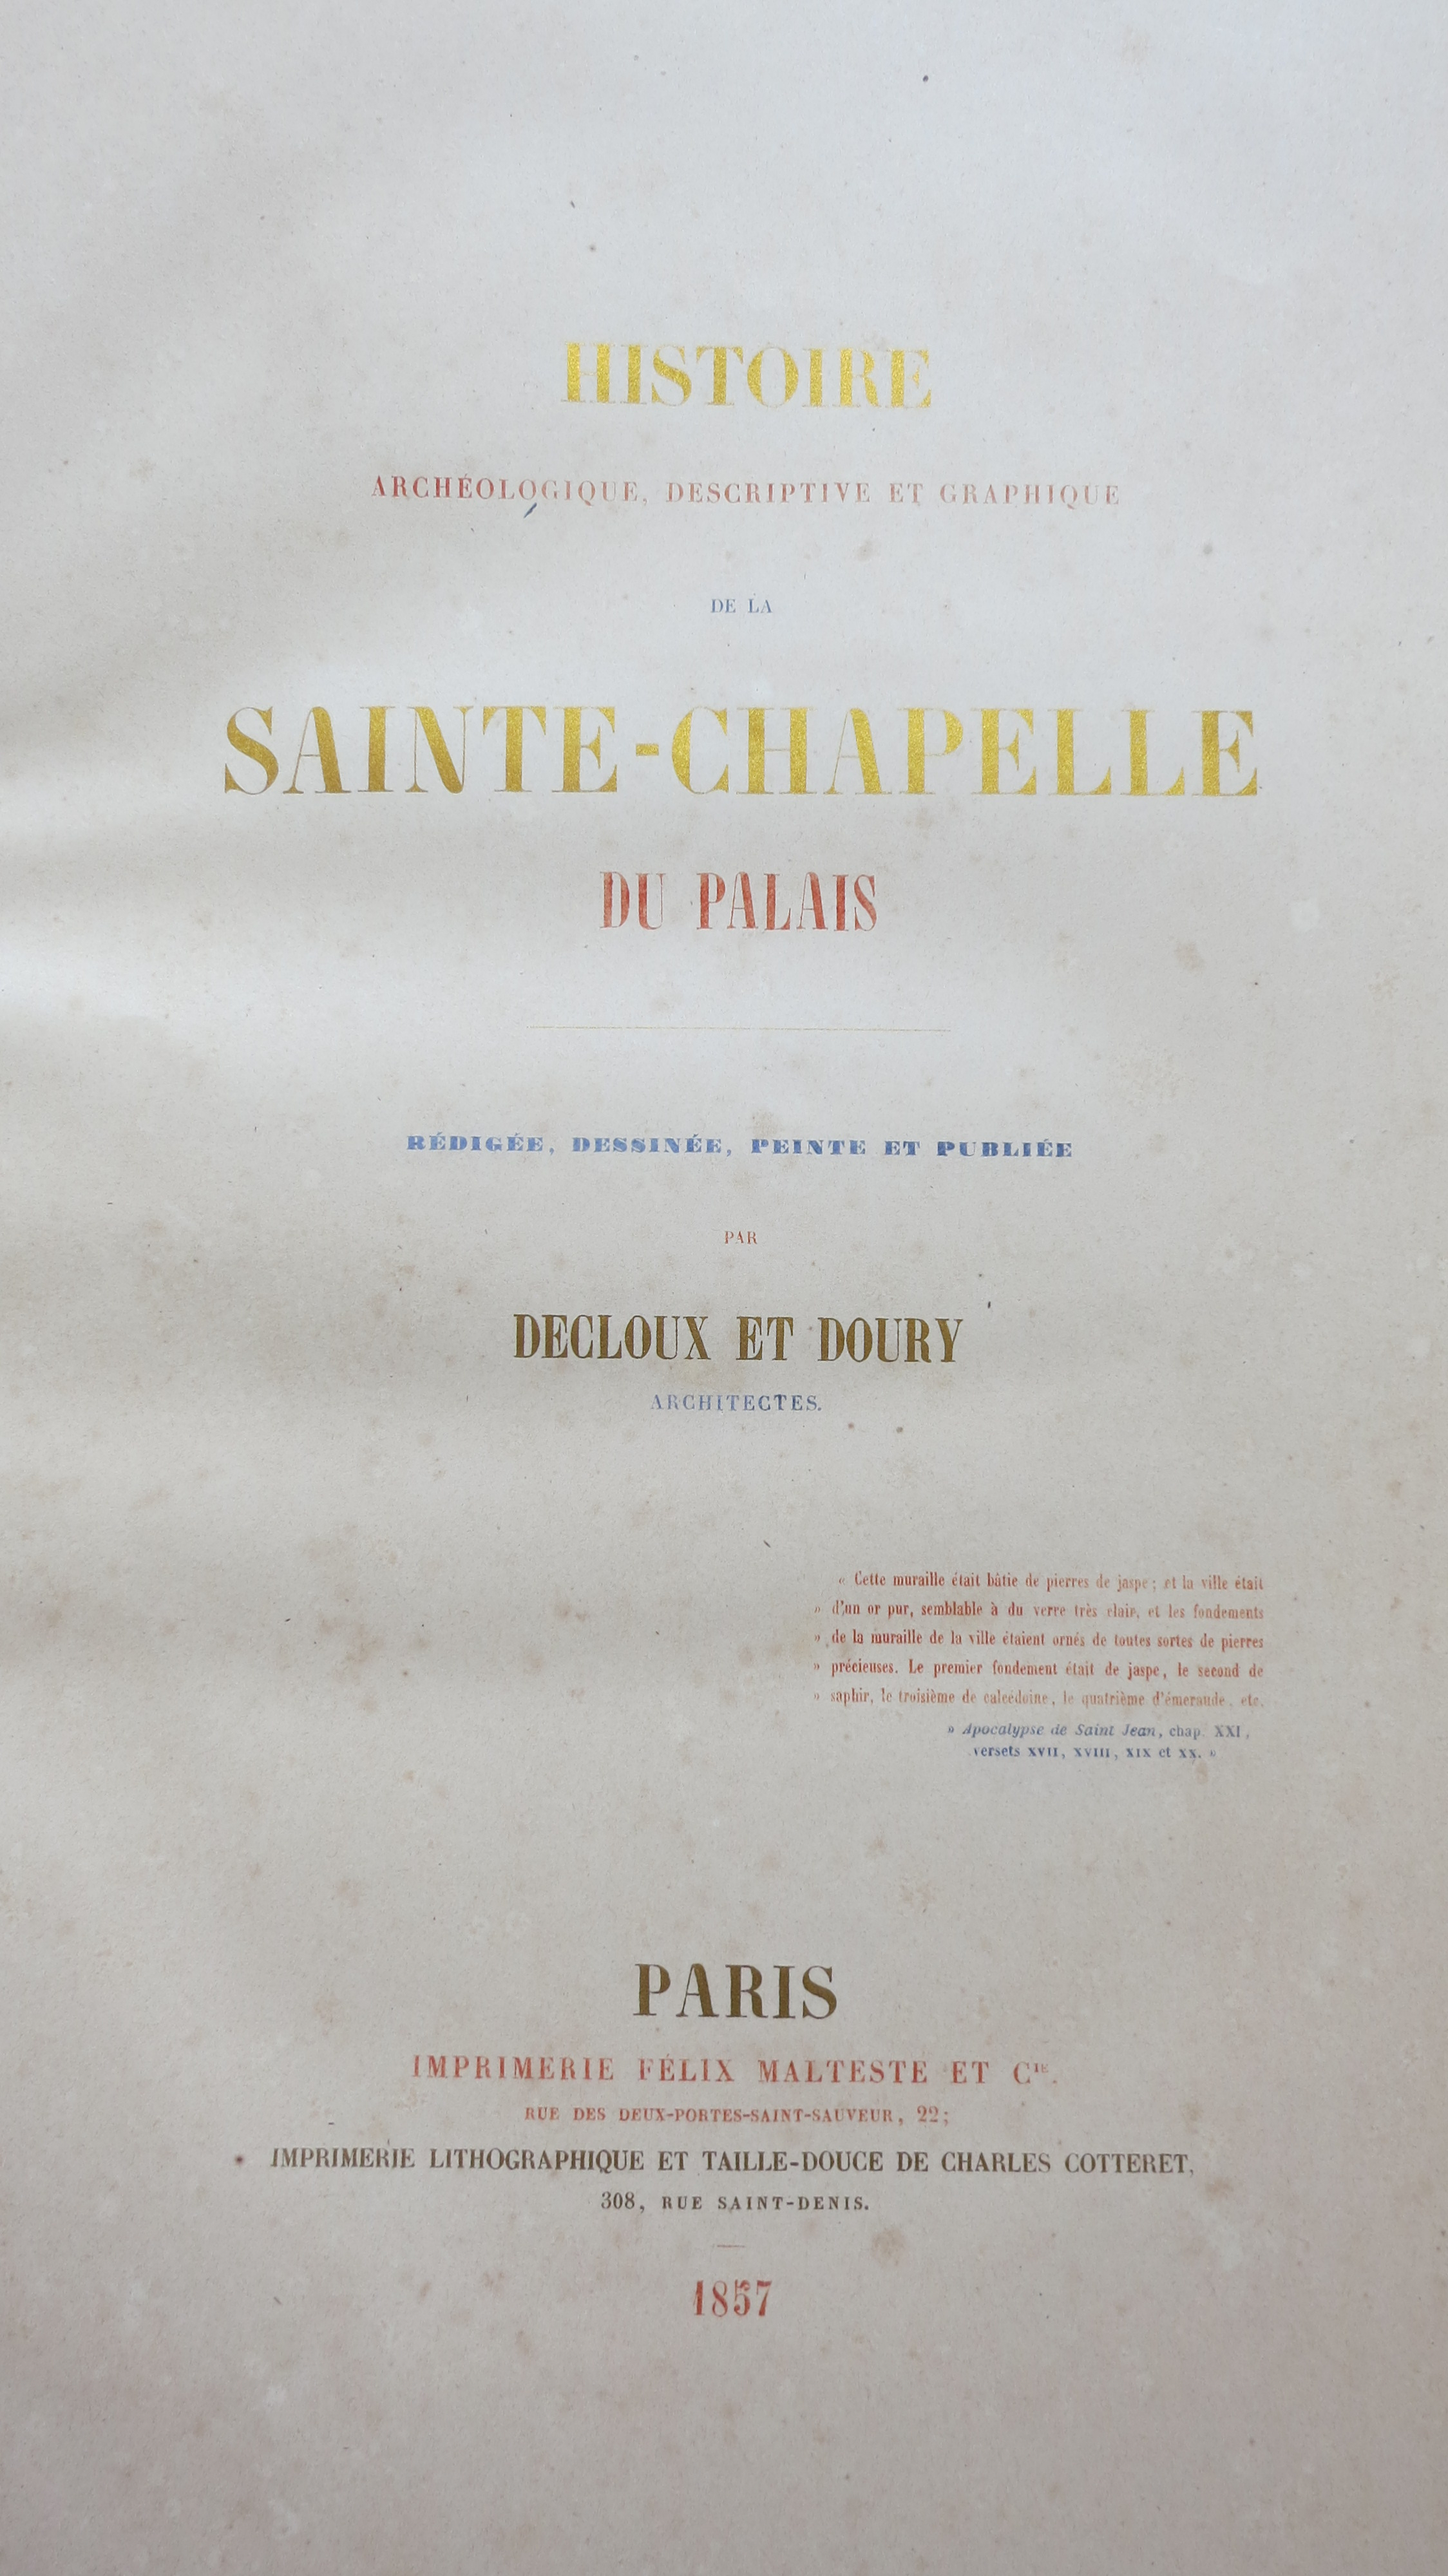 Histoire archéologique descriptive et graphique de la Sainte Chapelle 1857